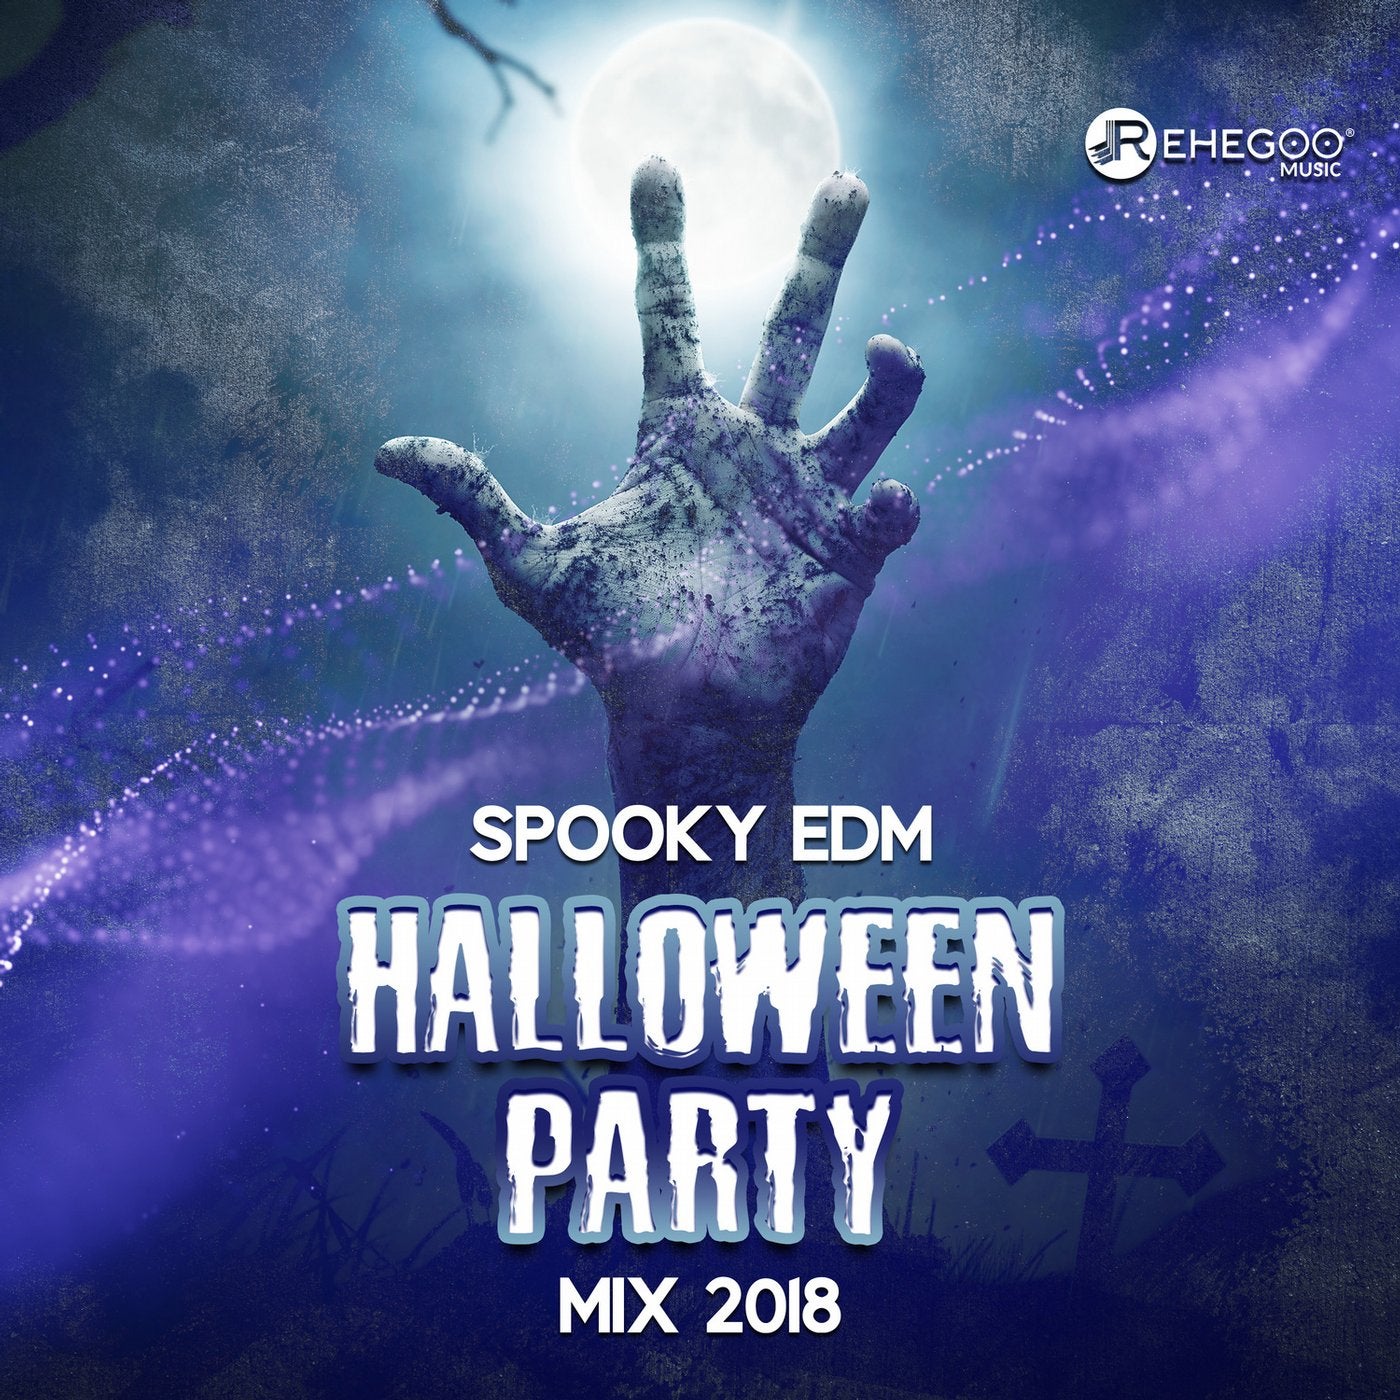 Spooky EDM Halloween Party Mix 2018